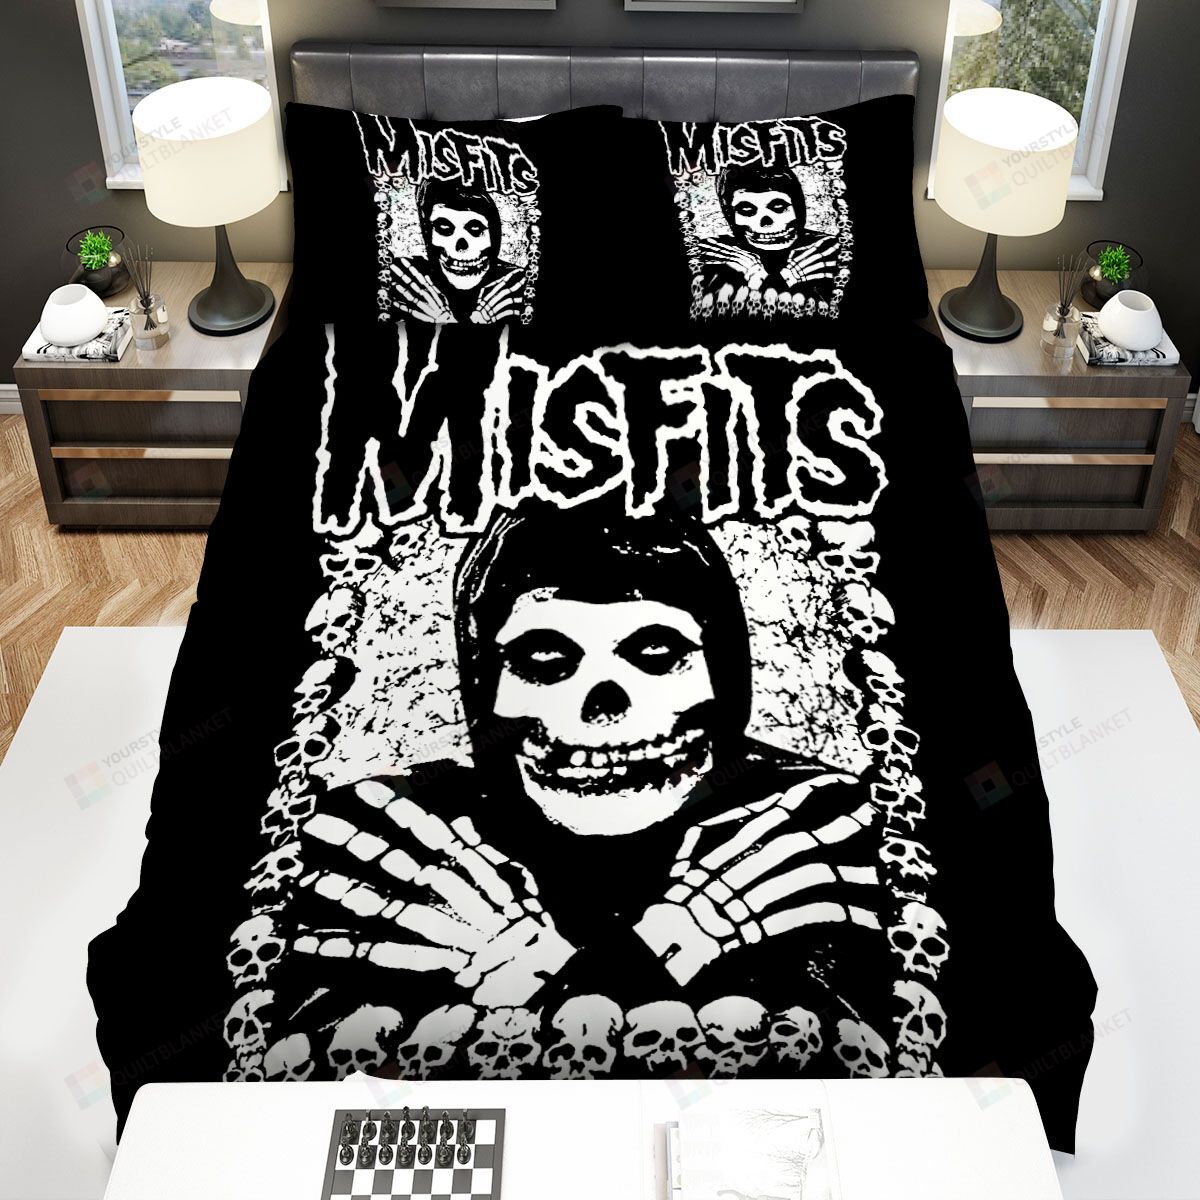 Misfits Camiseta Bed Sheets Spread Comforter Duvet Cover Bedding Sets